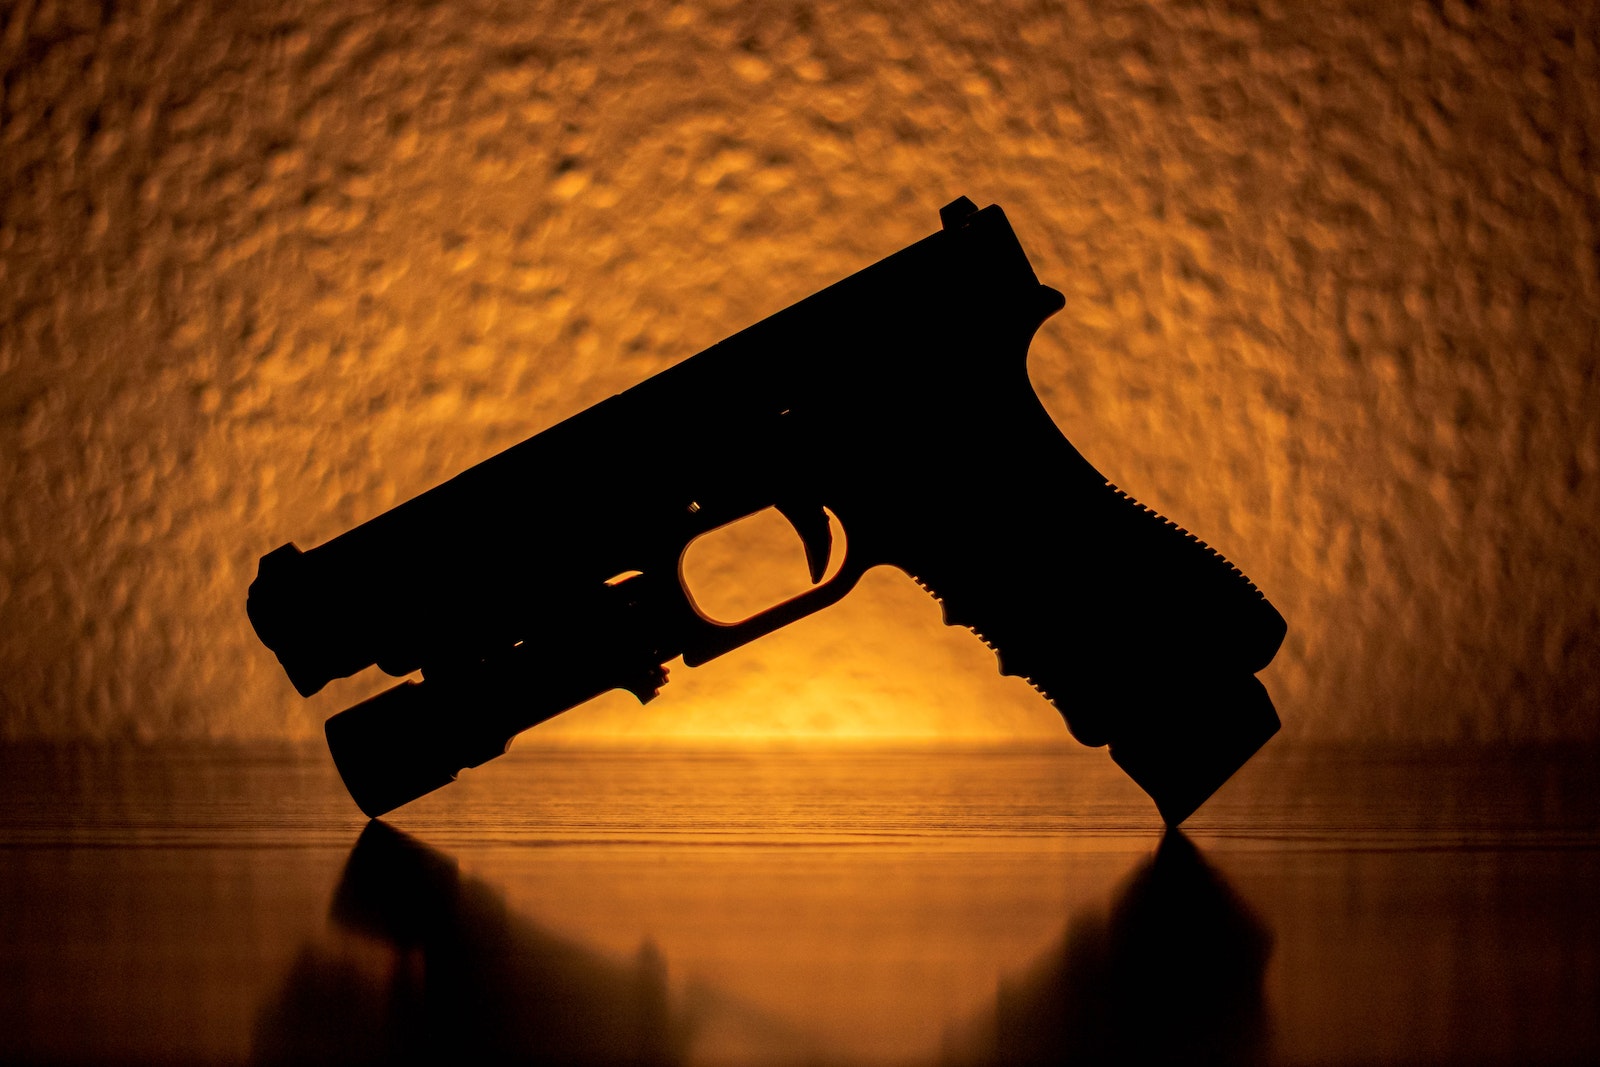 Glock 19 Gen 4 Silhouette of a Pistol Near an Orange Light